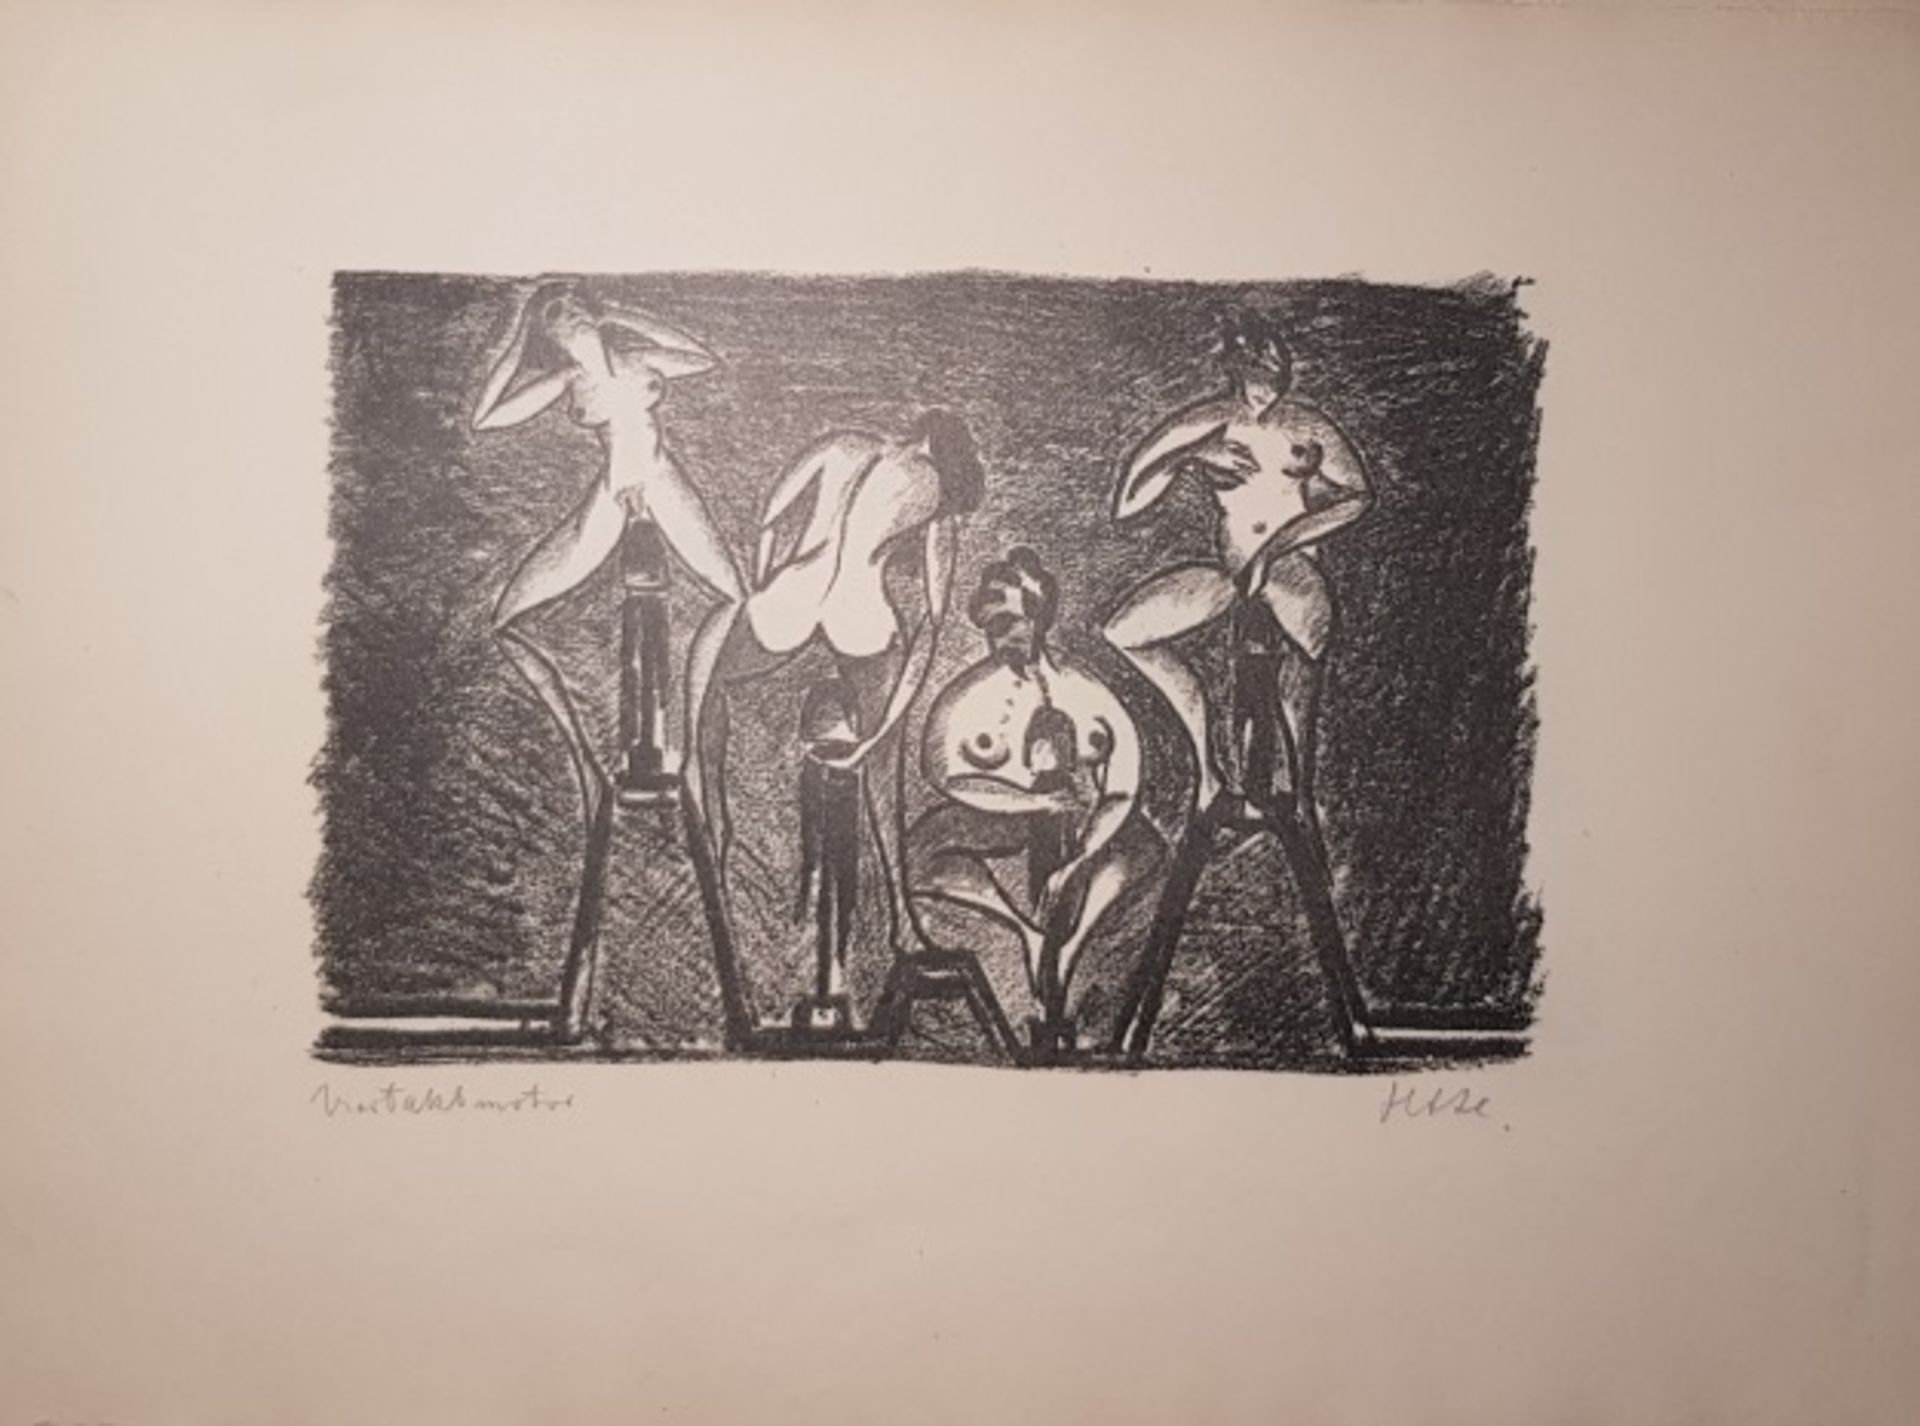 HEIMANN Hans Adolf (1882 - c.1955) "Eros ex machina" mit 10 grotesken Steinzeichnungen, 10 lose - Bild 3 aus 4